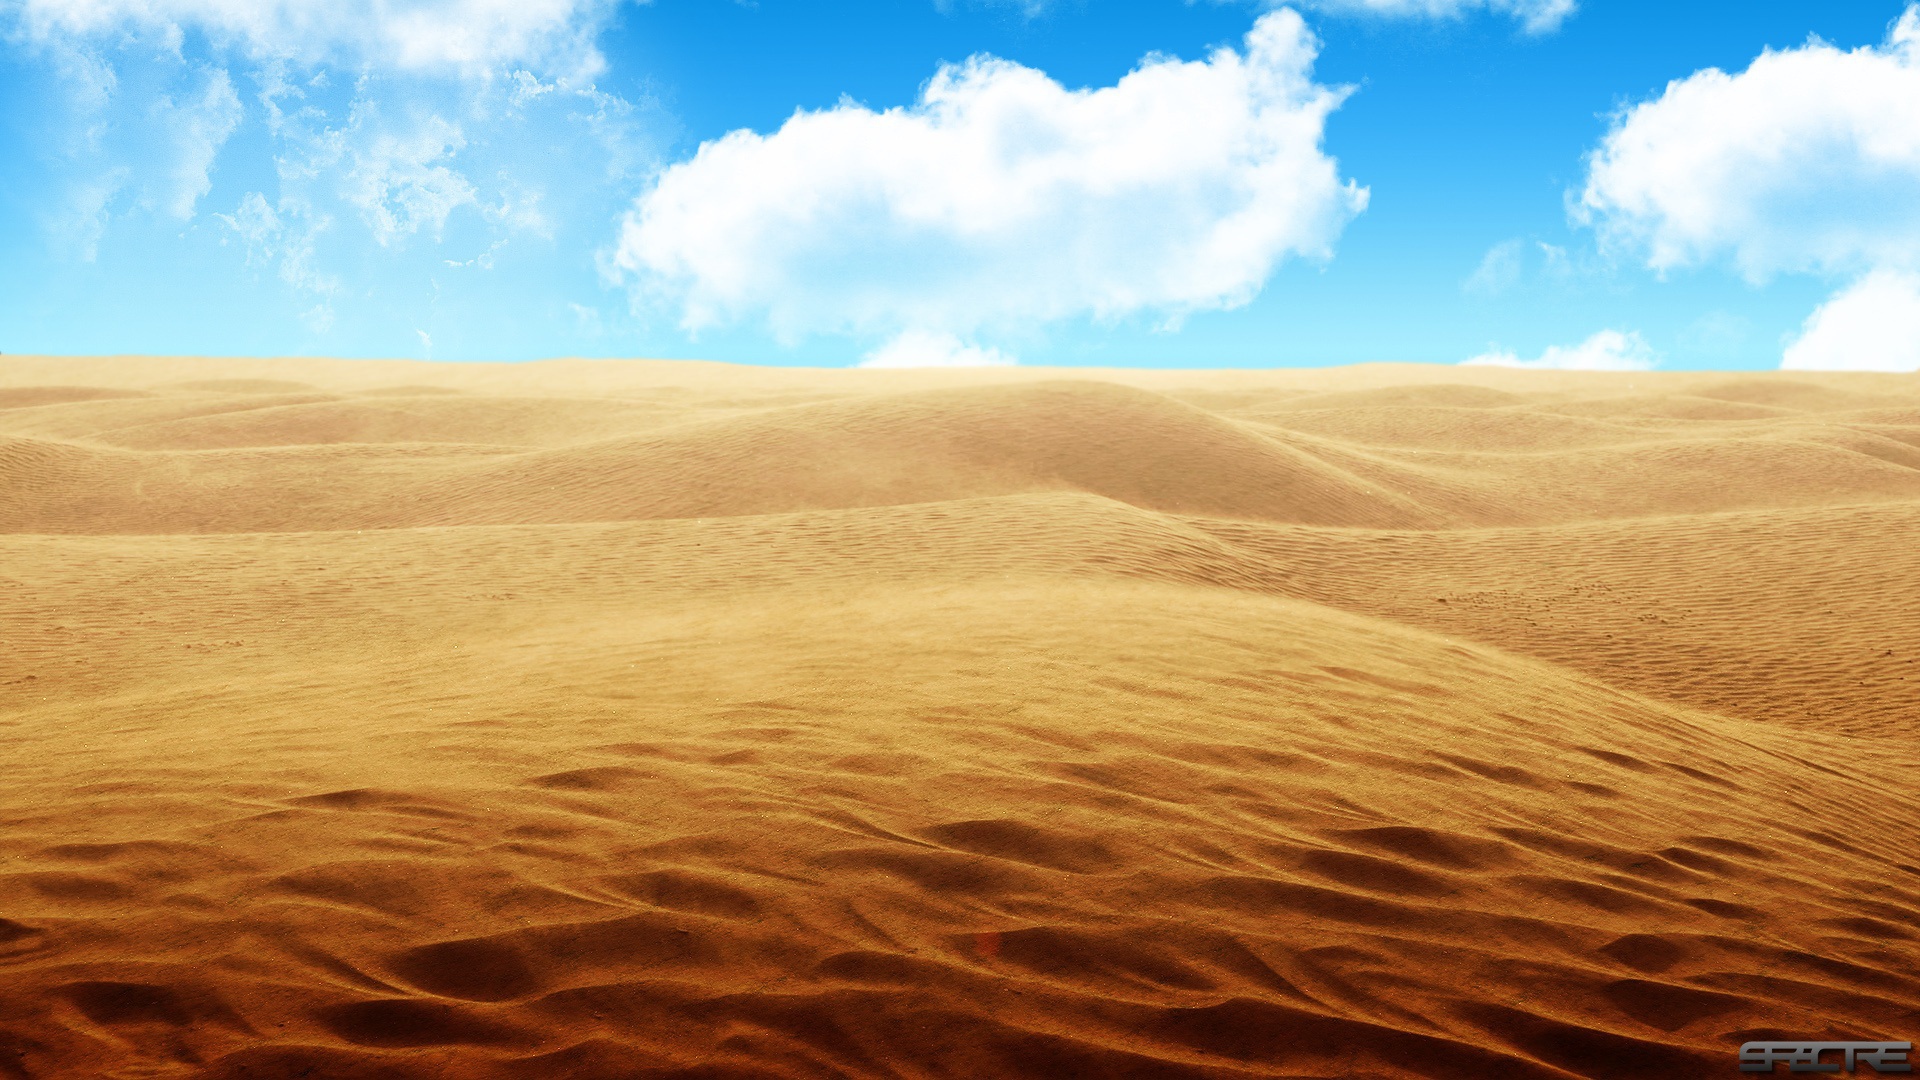 Песчаная пустыня 